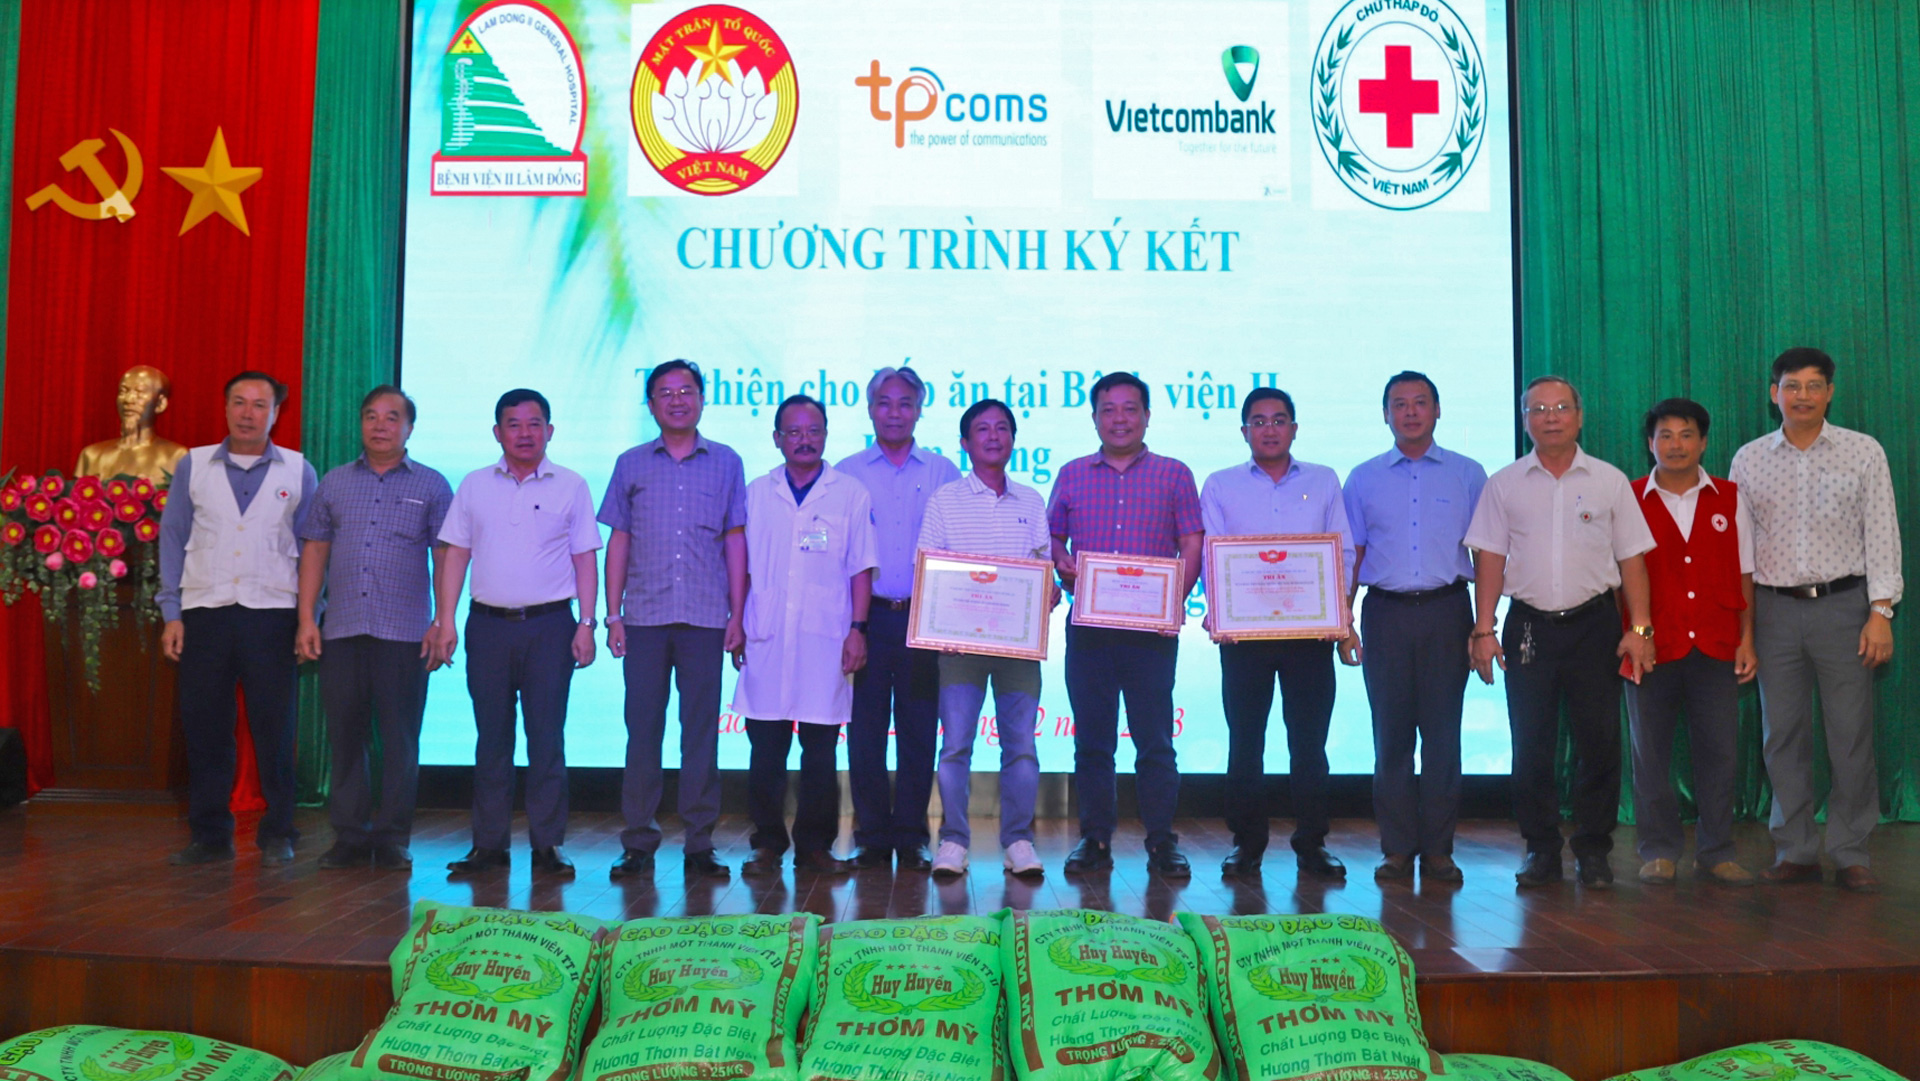 Ủy ban MTTQ Việt Nam TP Bảo Lộc và Bệnh viện II Lâm Đồng trao tặng chứng nhận Tri ân tấm lòng vàng cho Công ty TPComs và Ngân hàng Vietcombank chi nhánh TP Bảo Lộc